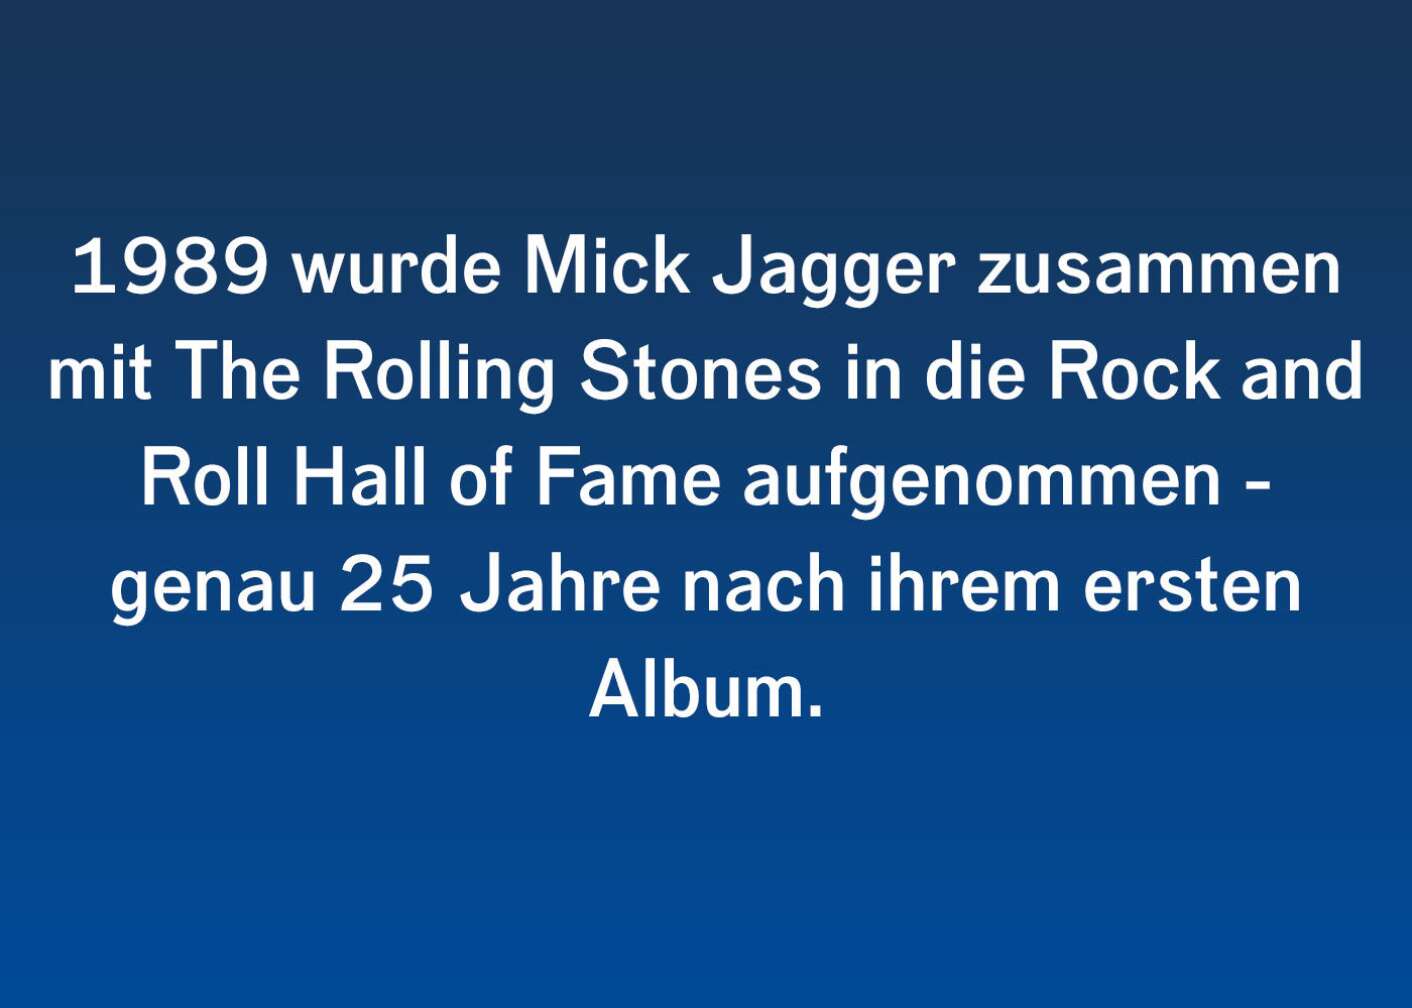 Facts & Stories zu Mick Jagger